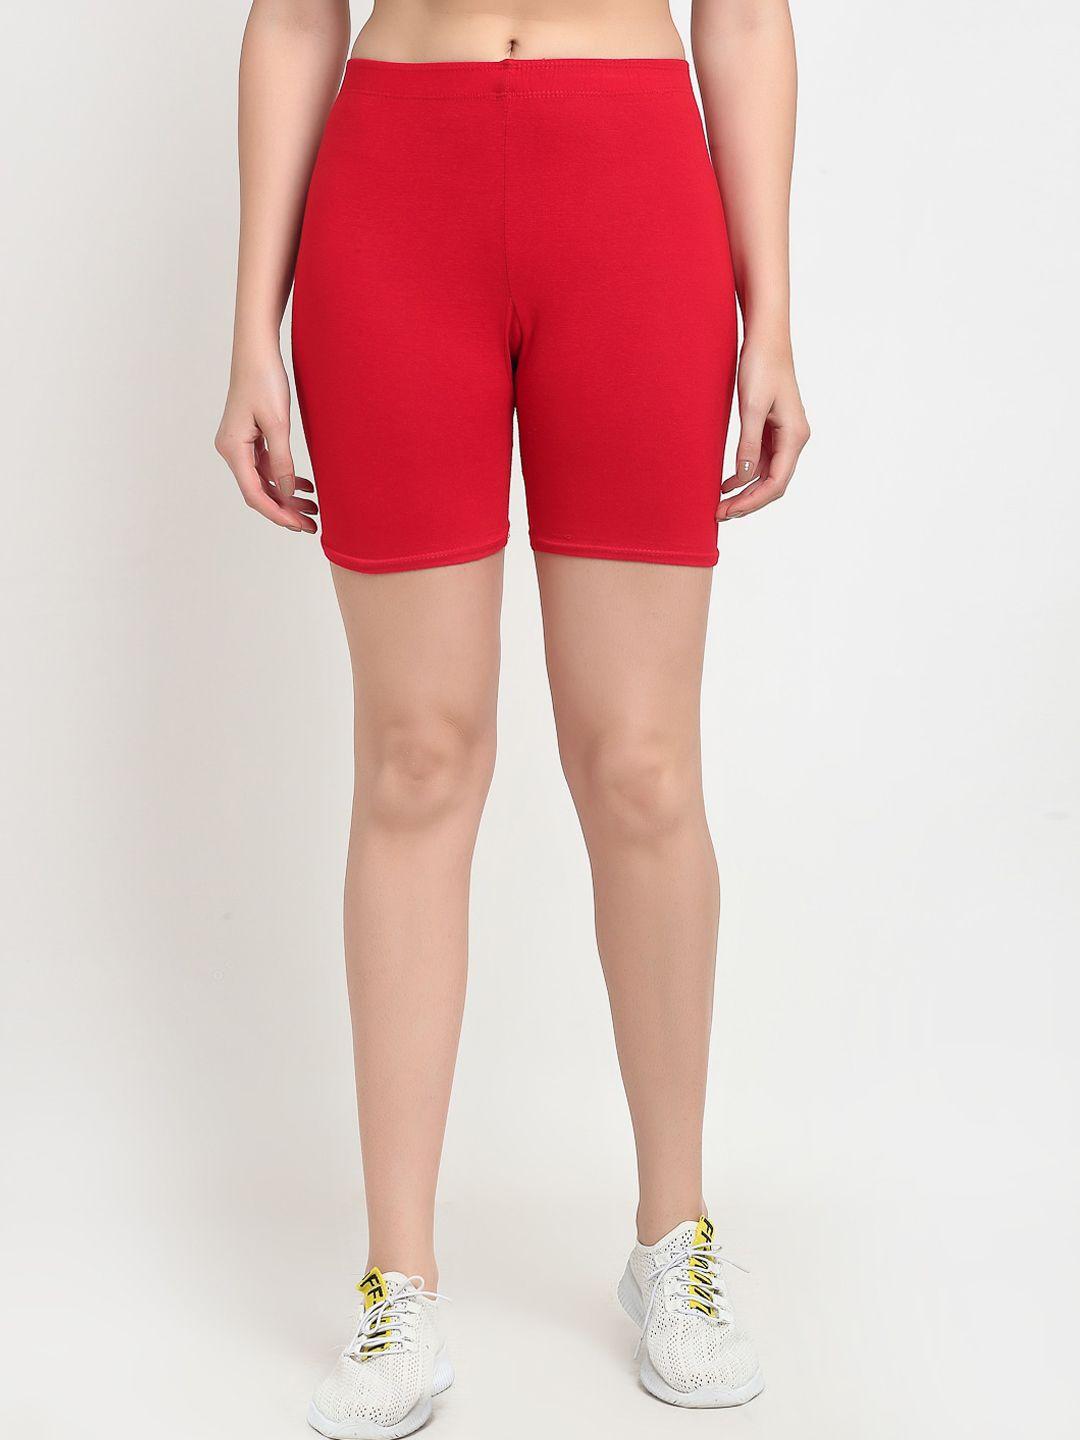 jinfo women red cycling sports shorts